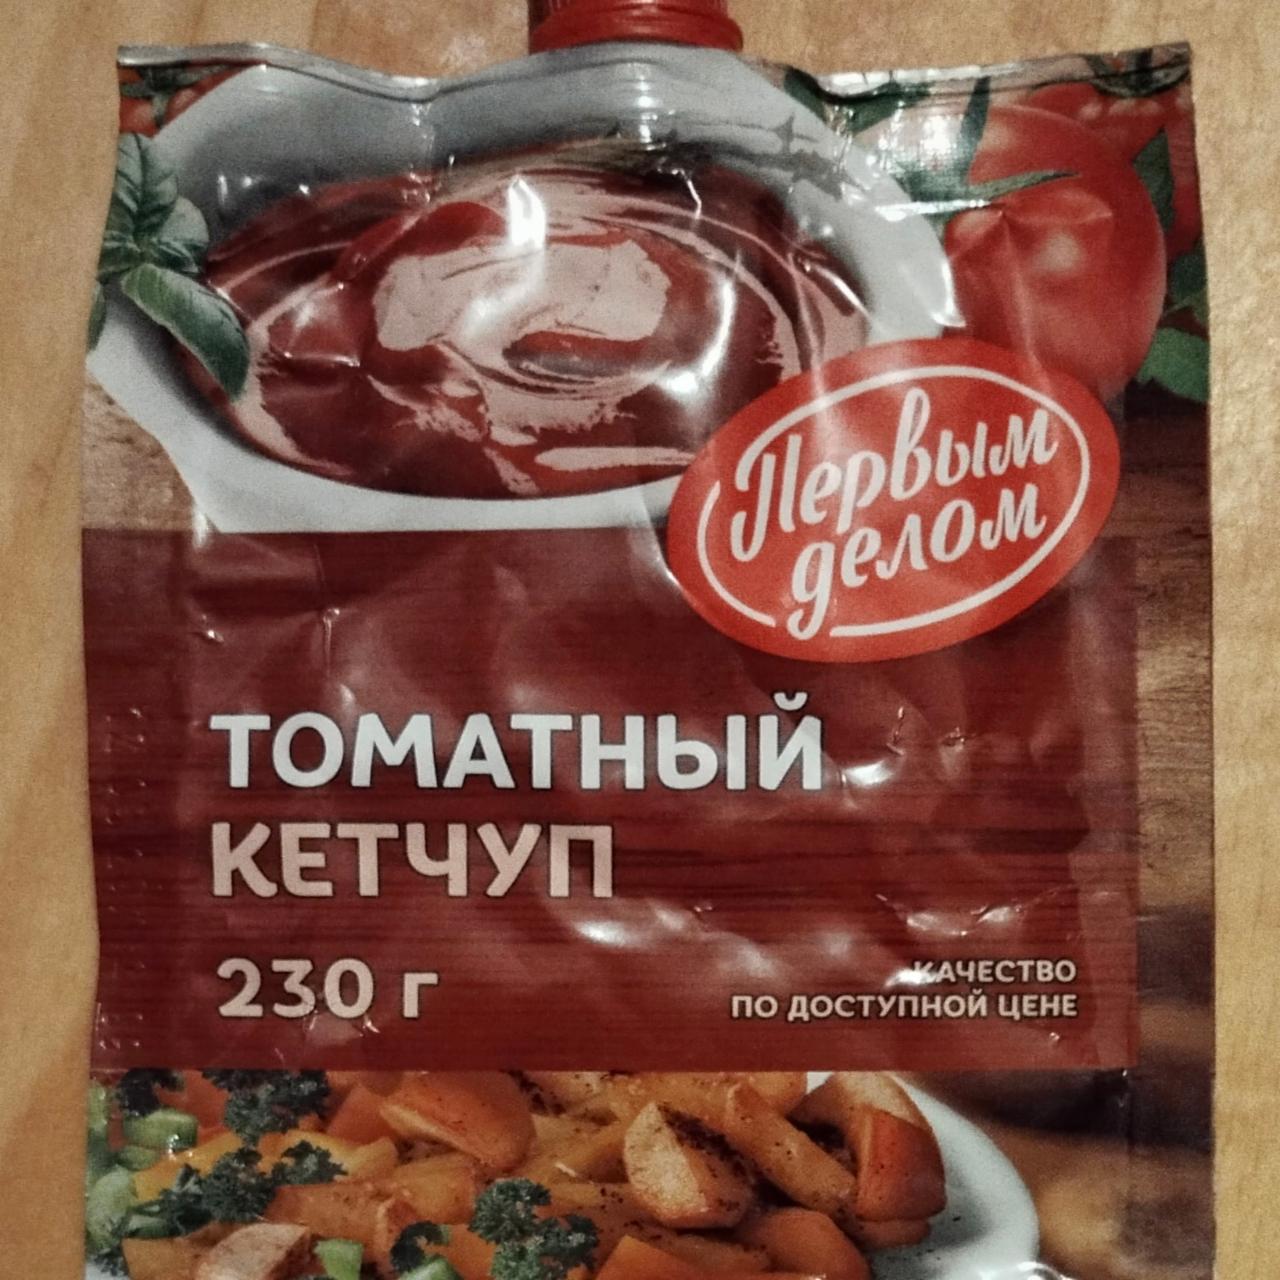 Фото - Кетчуп томатный нестерилизованный Первым делом